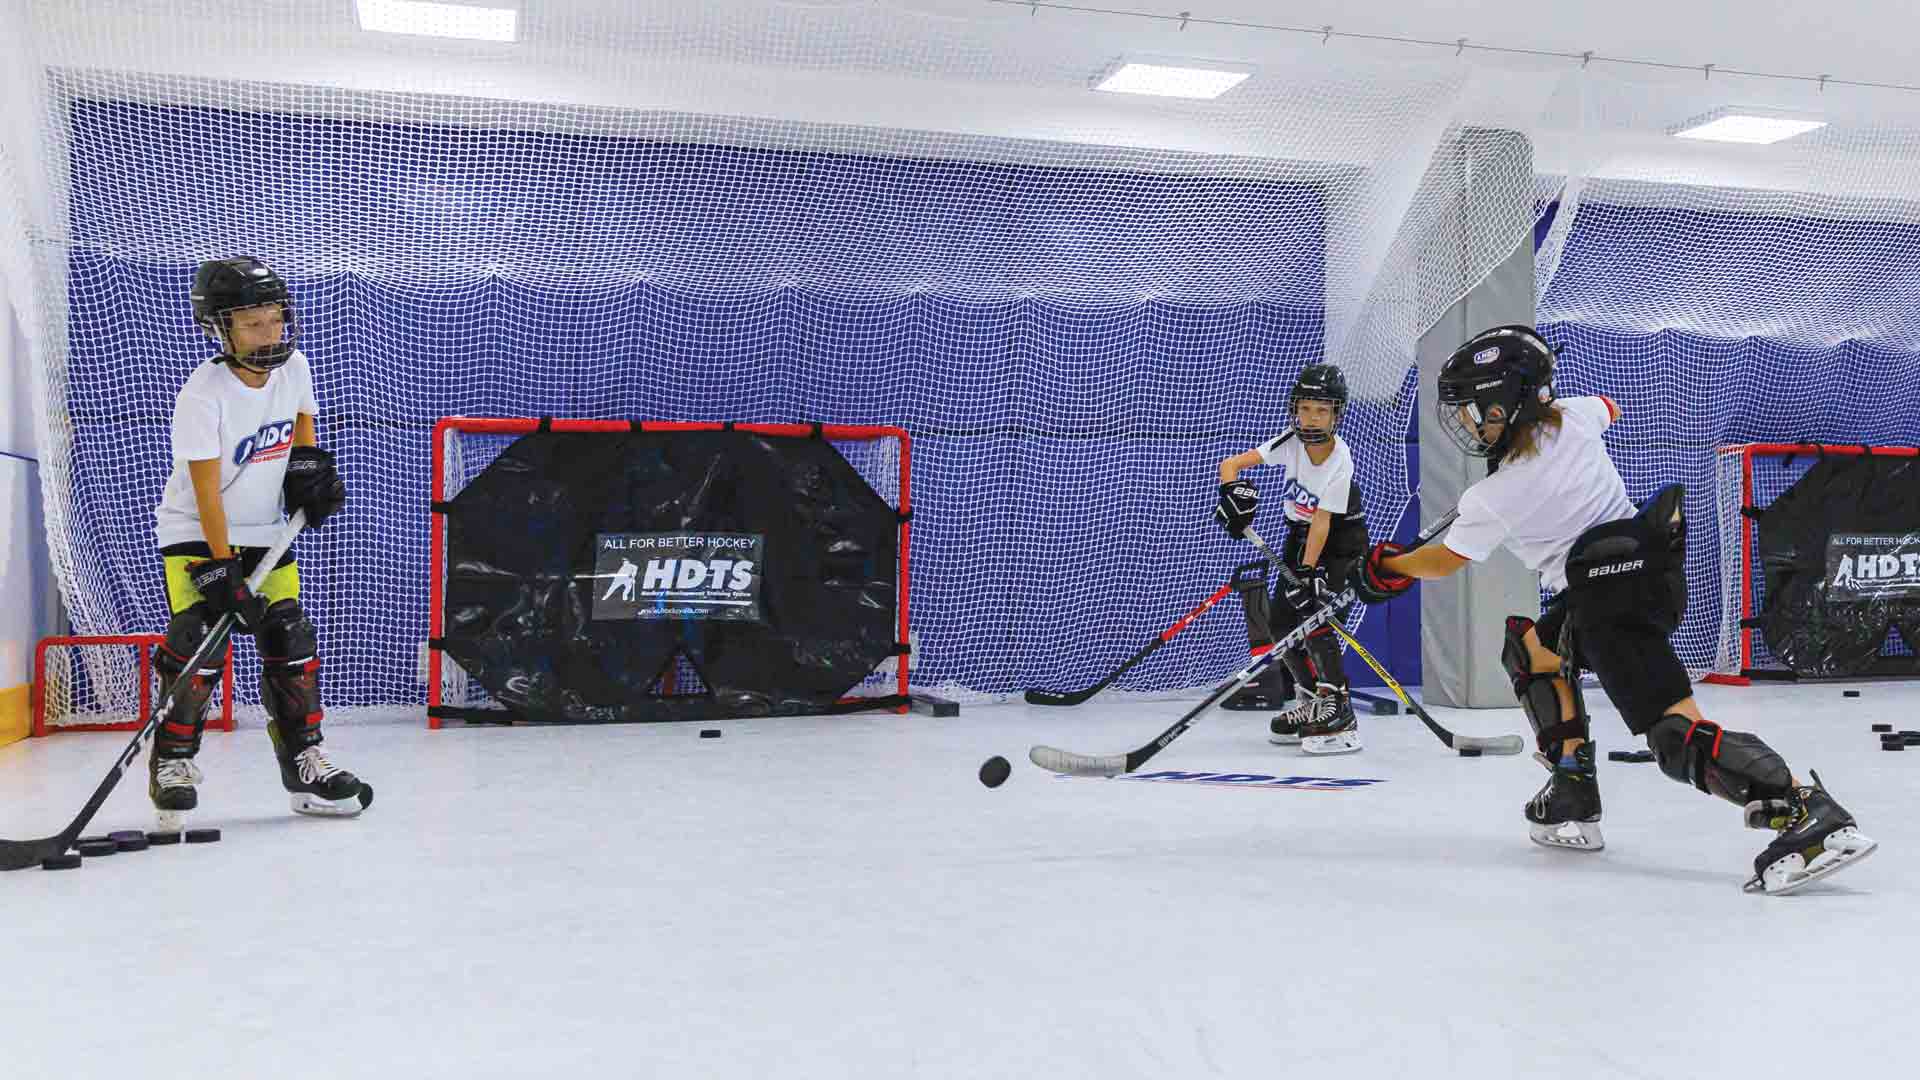 хоккейные тренировки в бросковой зоне с синтетическим льдом